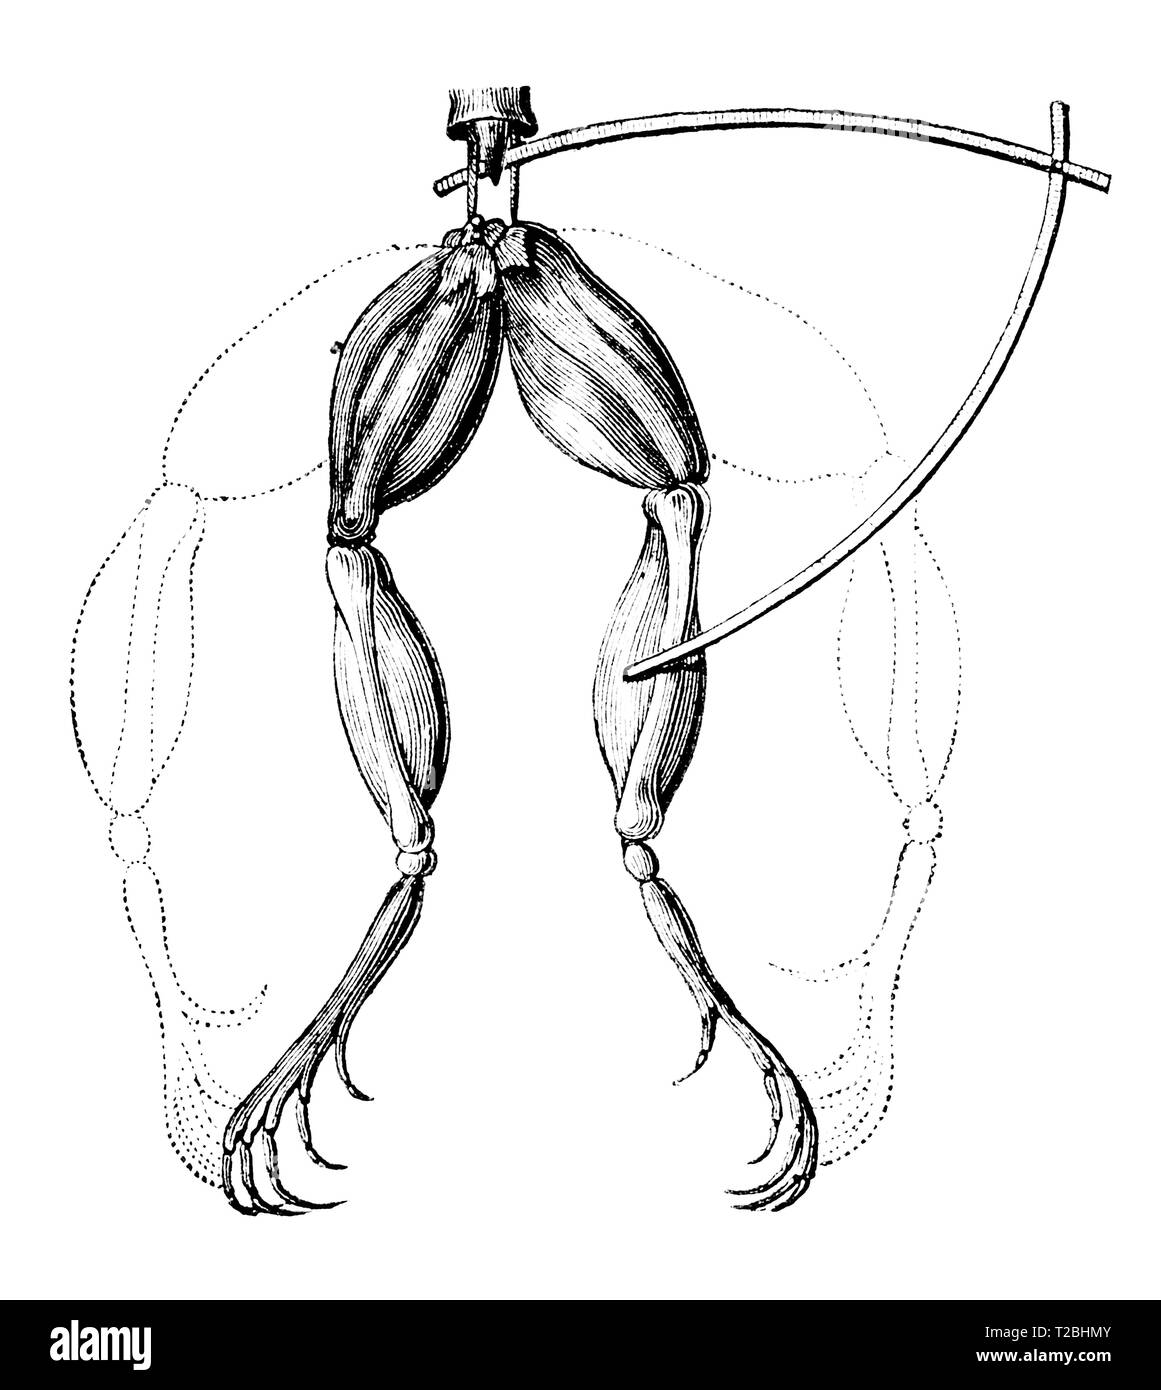 Luigi Galvani fisico italiano (1737-1798) ha scoperto che i muscoli delle morti di cosce di rane ebbe un sussulto quando colpita da una scintilla elettrica. Oggi, lo studio degli effetti galvanici in biologia è chiamato di elettrofisiologia. Foto Stock